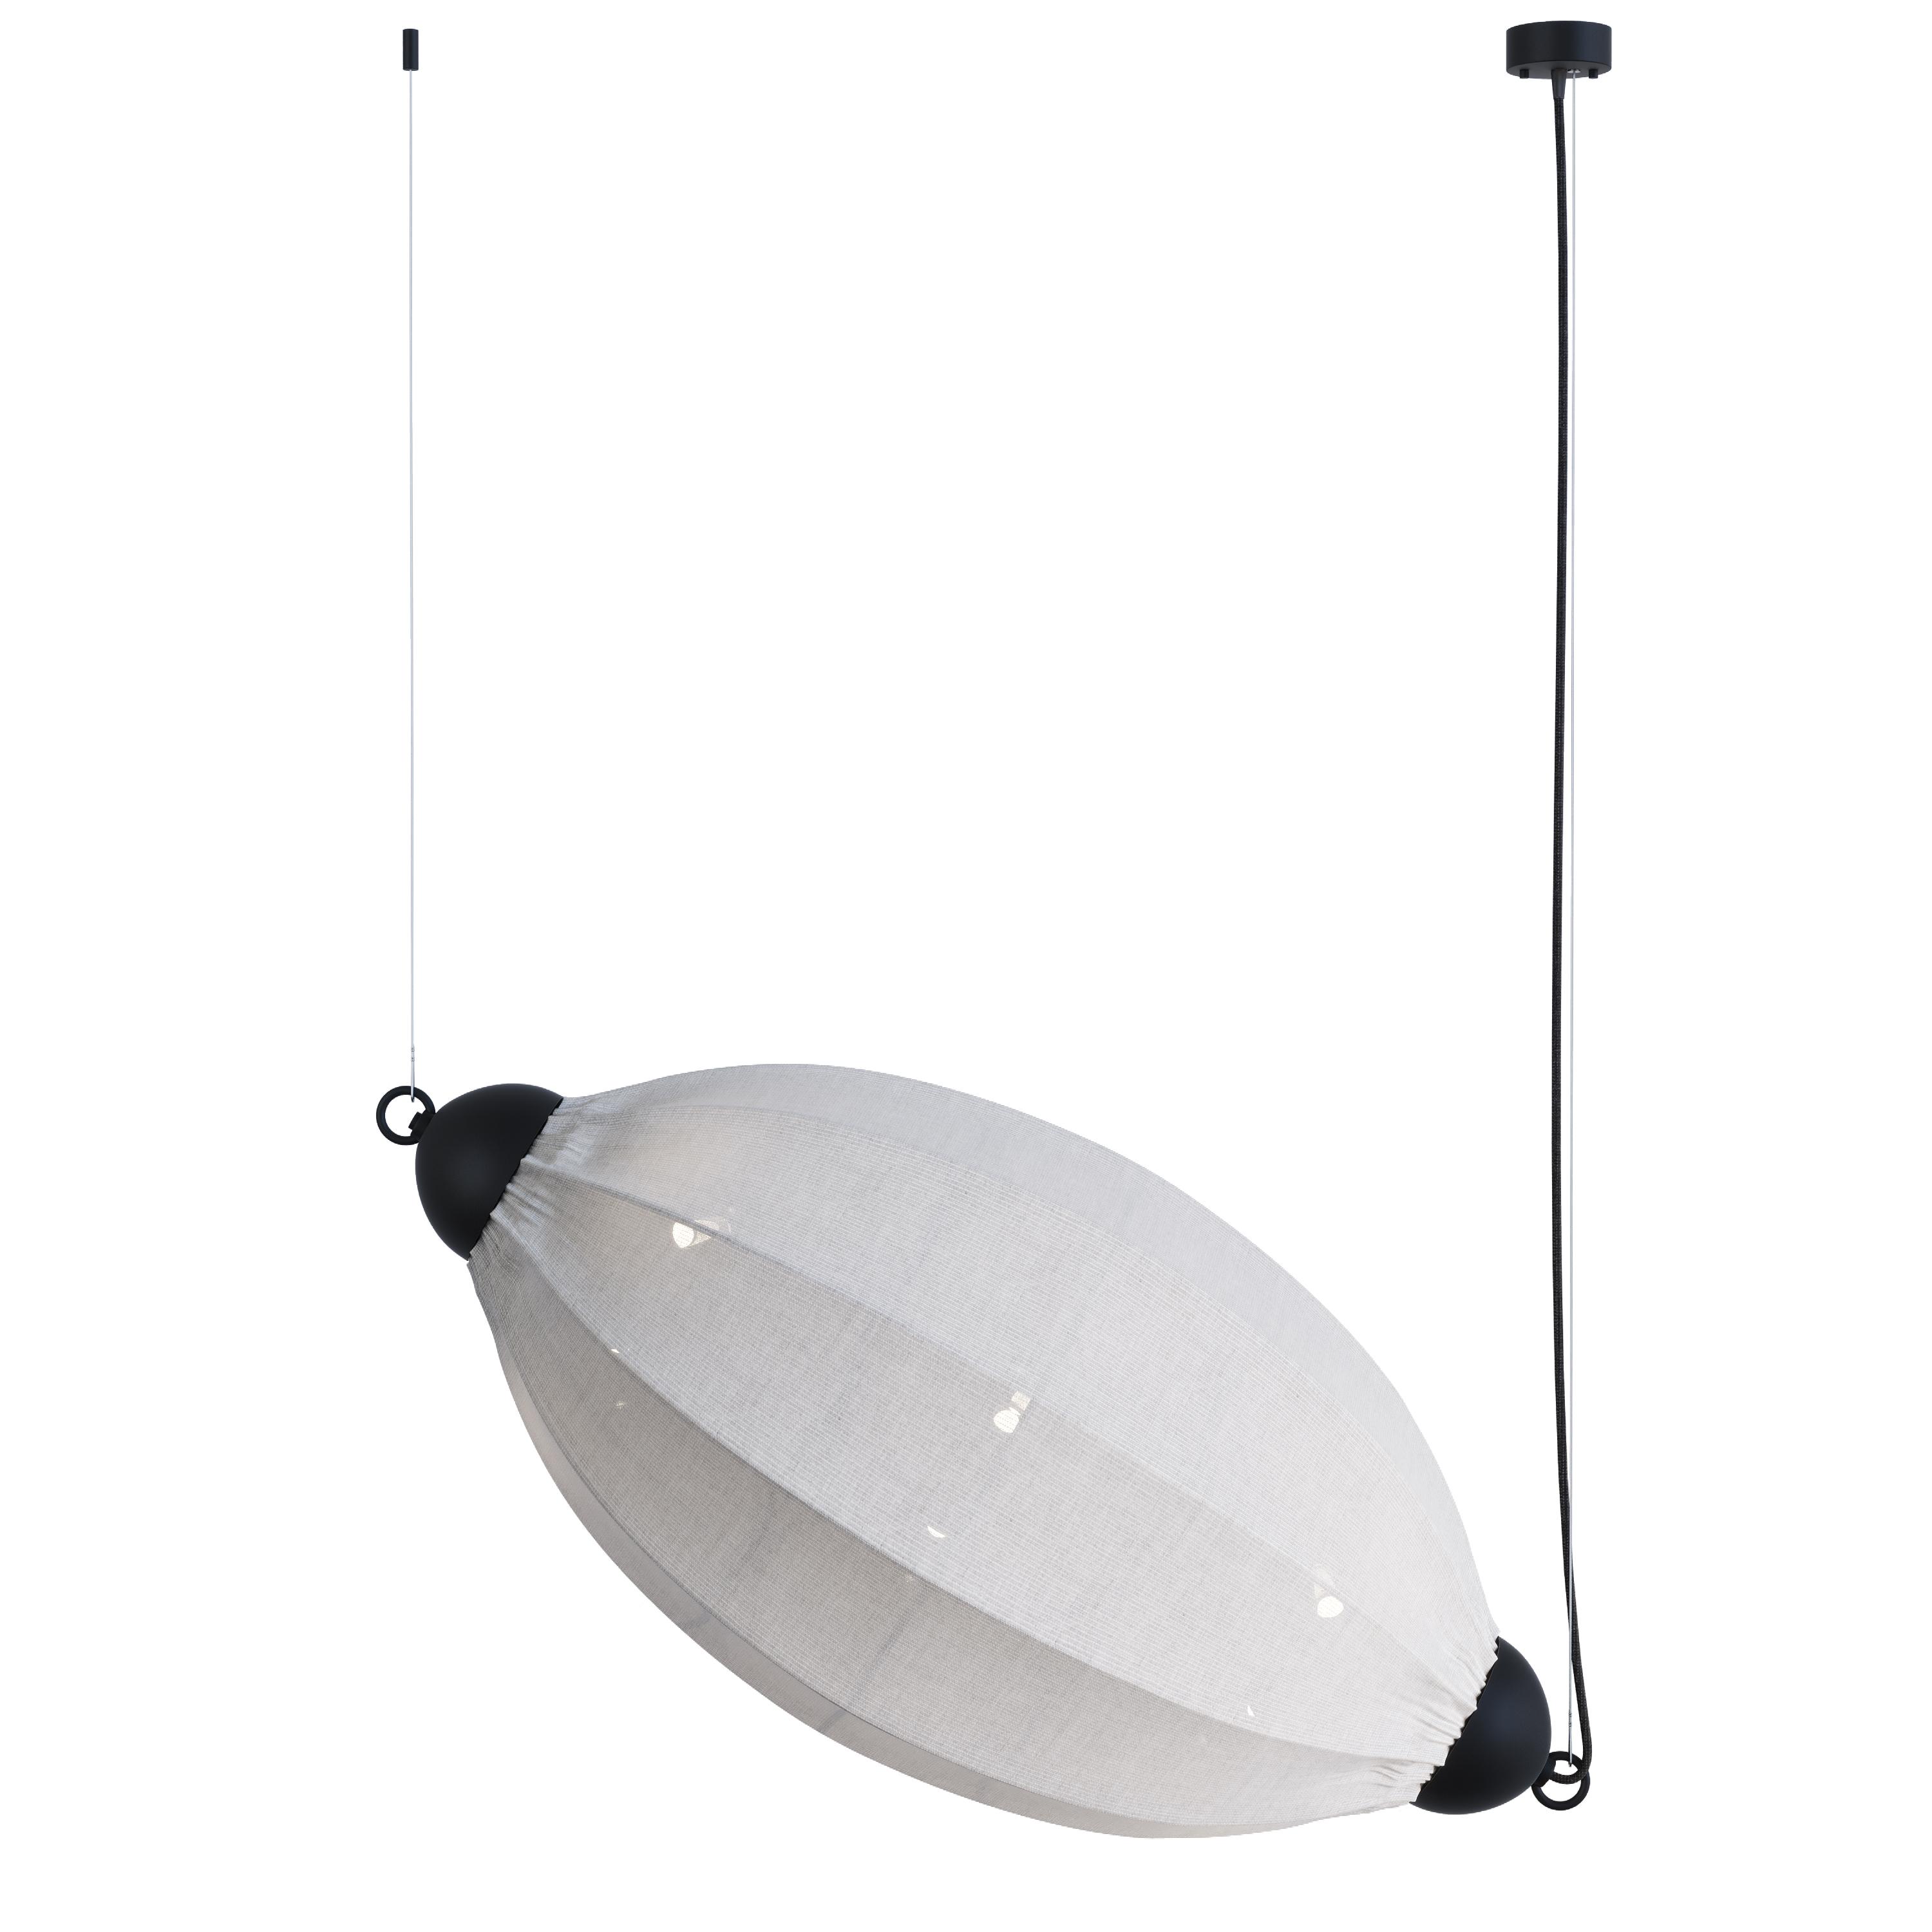 Chrysalis, L900 lamp, SKU. 26954 by Pikartlights 3d model